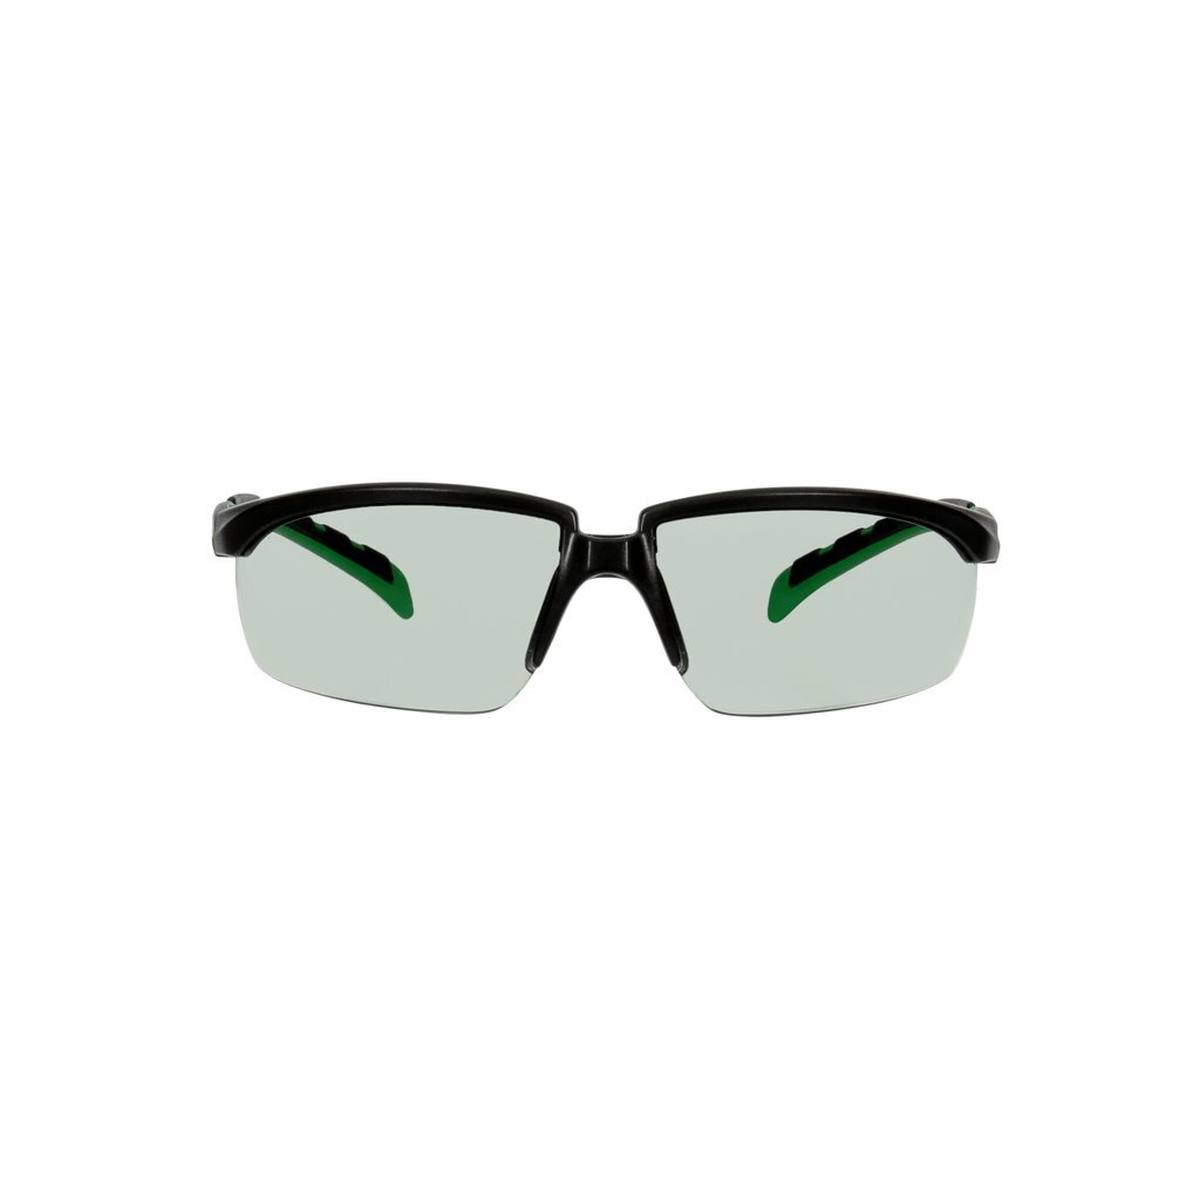 3M Solus 2000 veiligheidsbril, zwart/groen montuur, antikrascoating + (K), grijs glas IR 1.7, S2017ASP-BLK